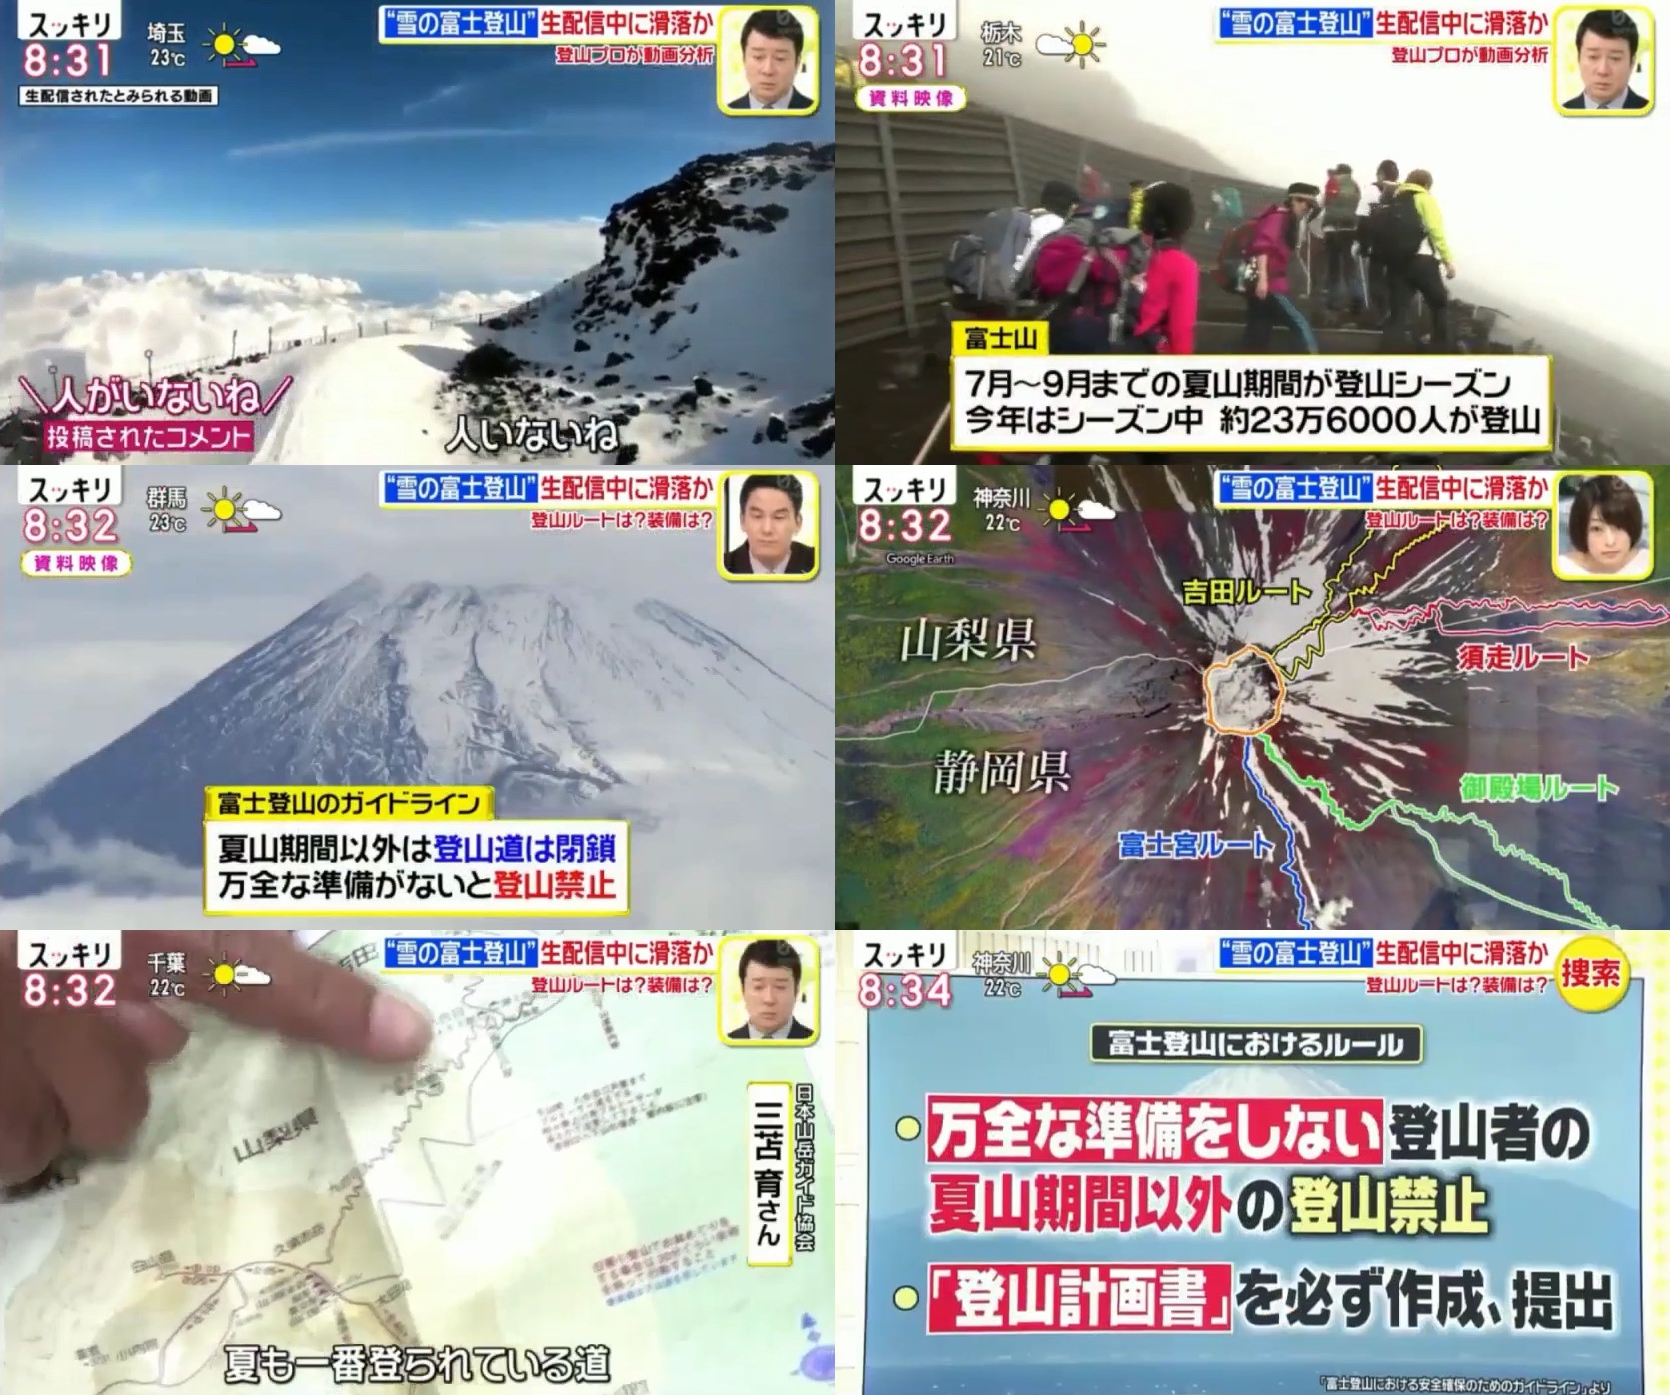 悲報 富士山で滑落したニコ生主の遺体が発見された模様 やらおん